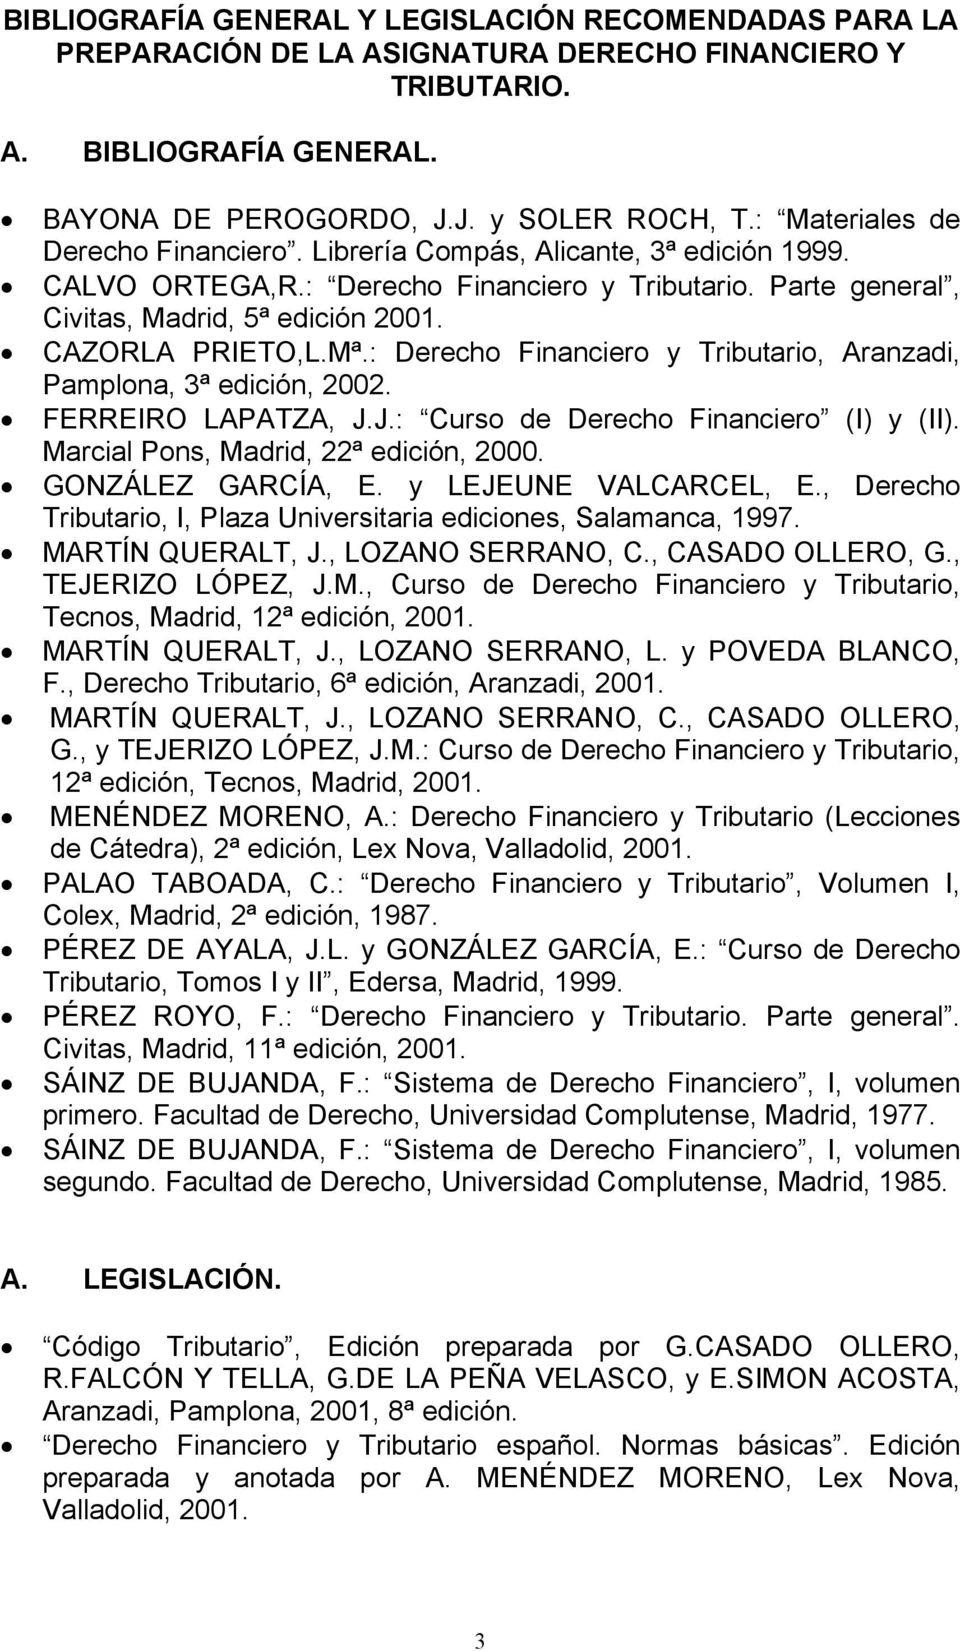 : Derecho Financiero y Tributario, Aranzadi, Pamplona, 3ª edición, 2002. FERREIRO LAPATZA, J.J.: Curso de Derecho Financiero (I) y (II). Marcial Pons, Madrid, 22ª edición, 2000. GONZÁLEZ GARCÍA, E.